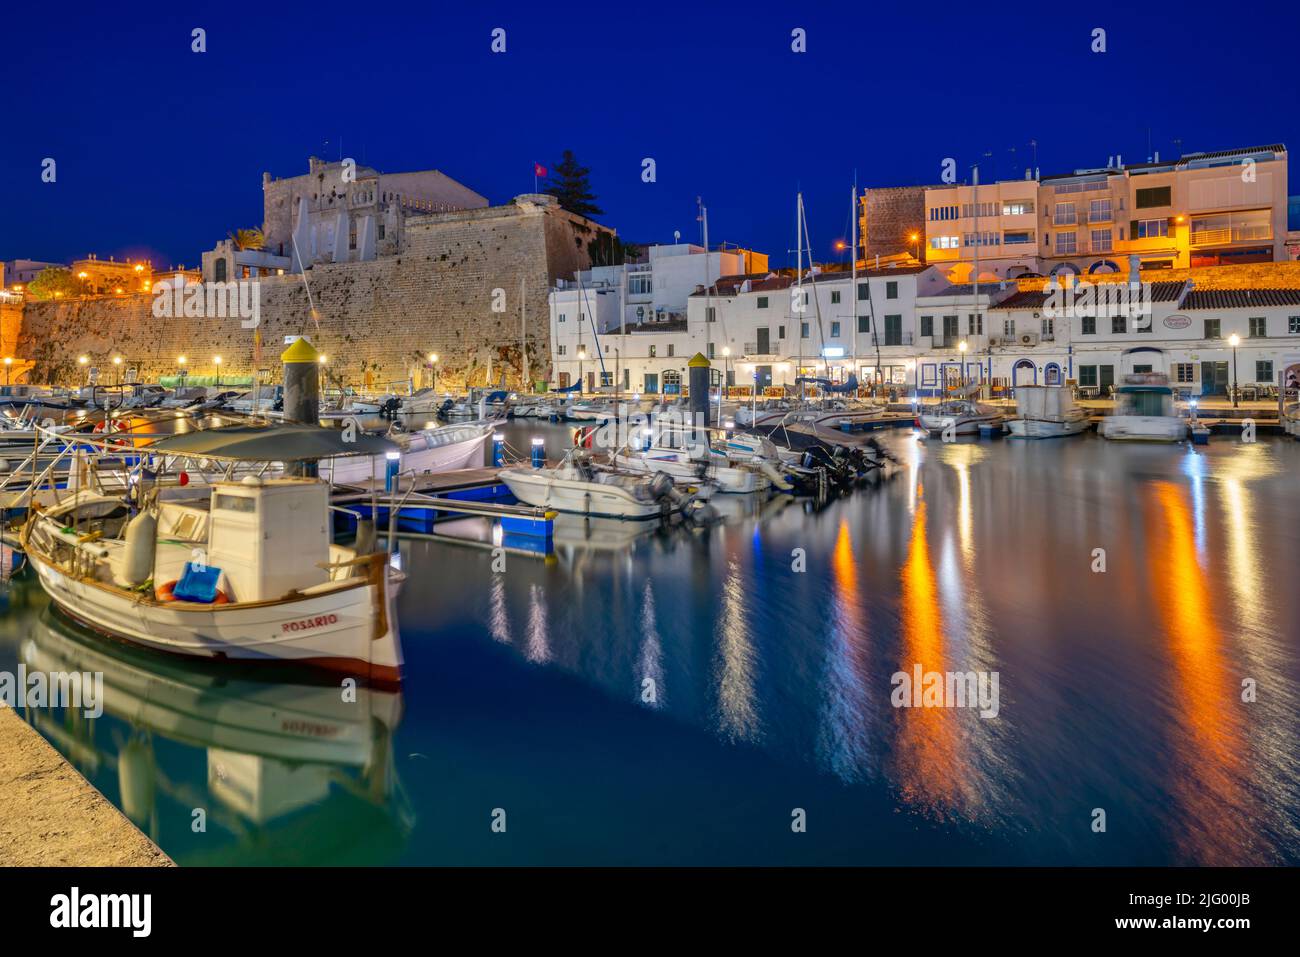 Vista de barcos en el puerto deportivo con vistas a edificios encalados al atardecer, Ciutadella, Menorca, Islas Baleares, España, Mediterráneo, Europa Foto de stock